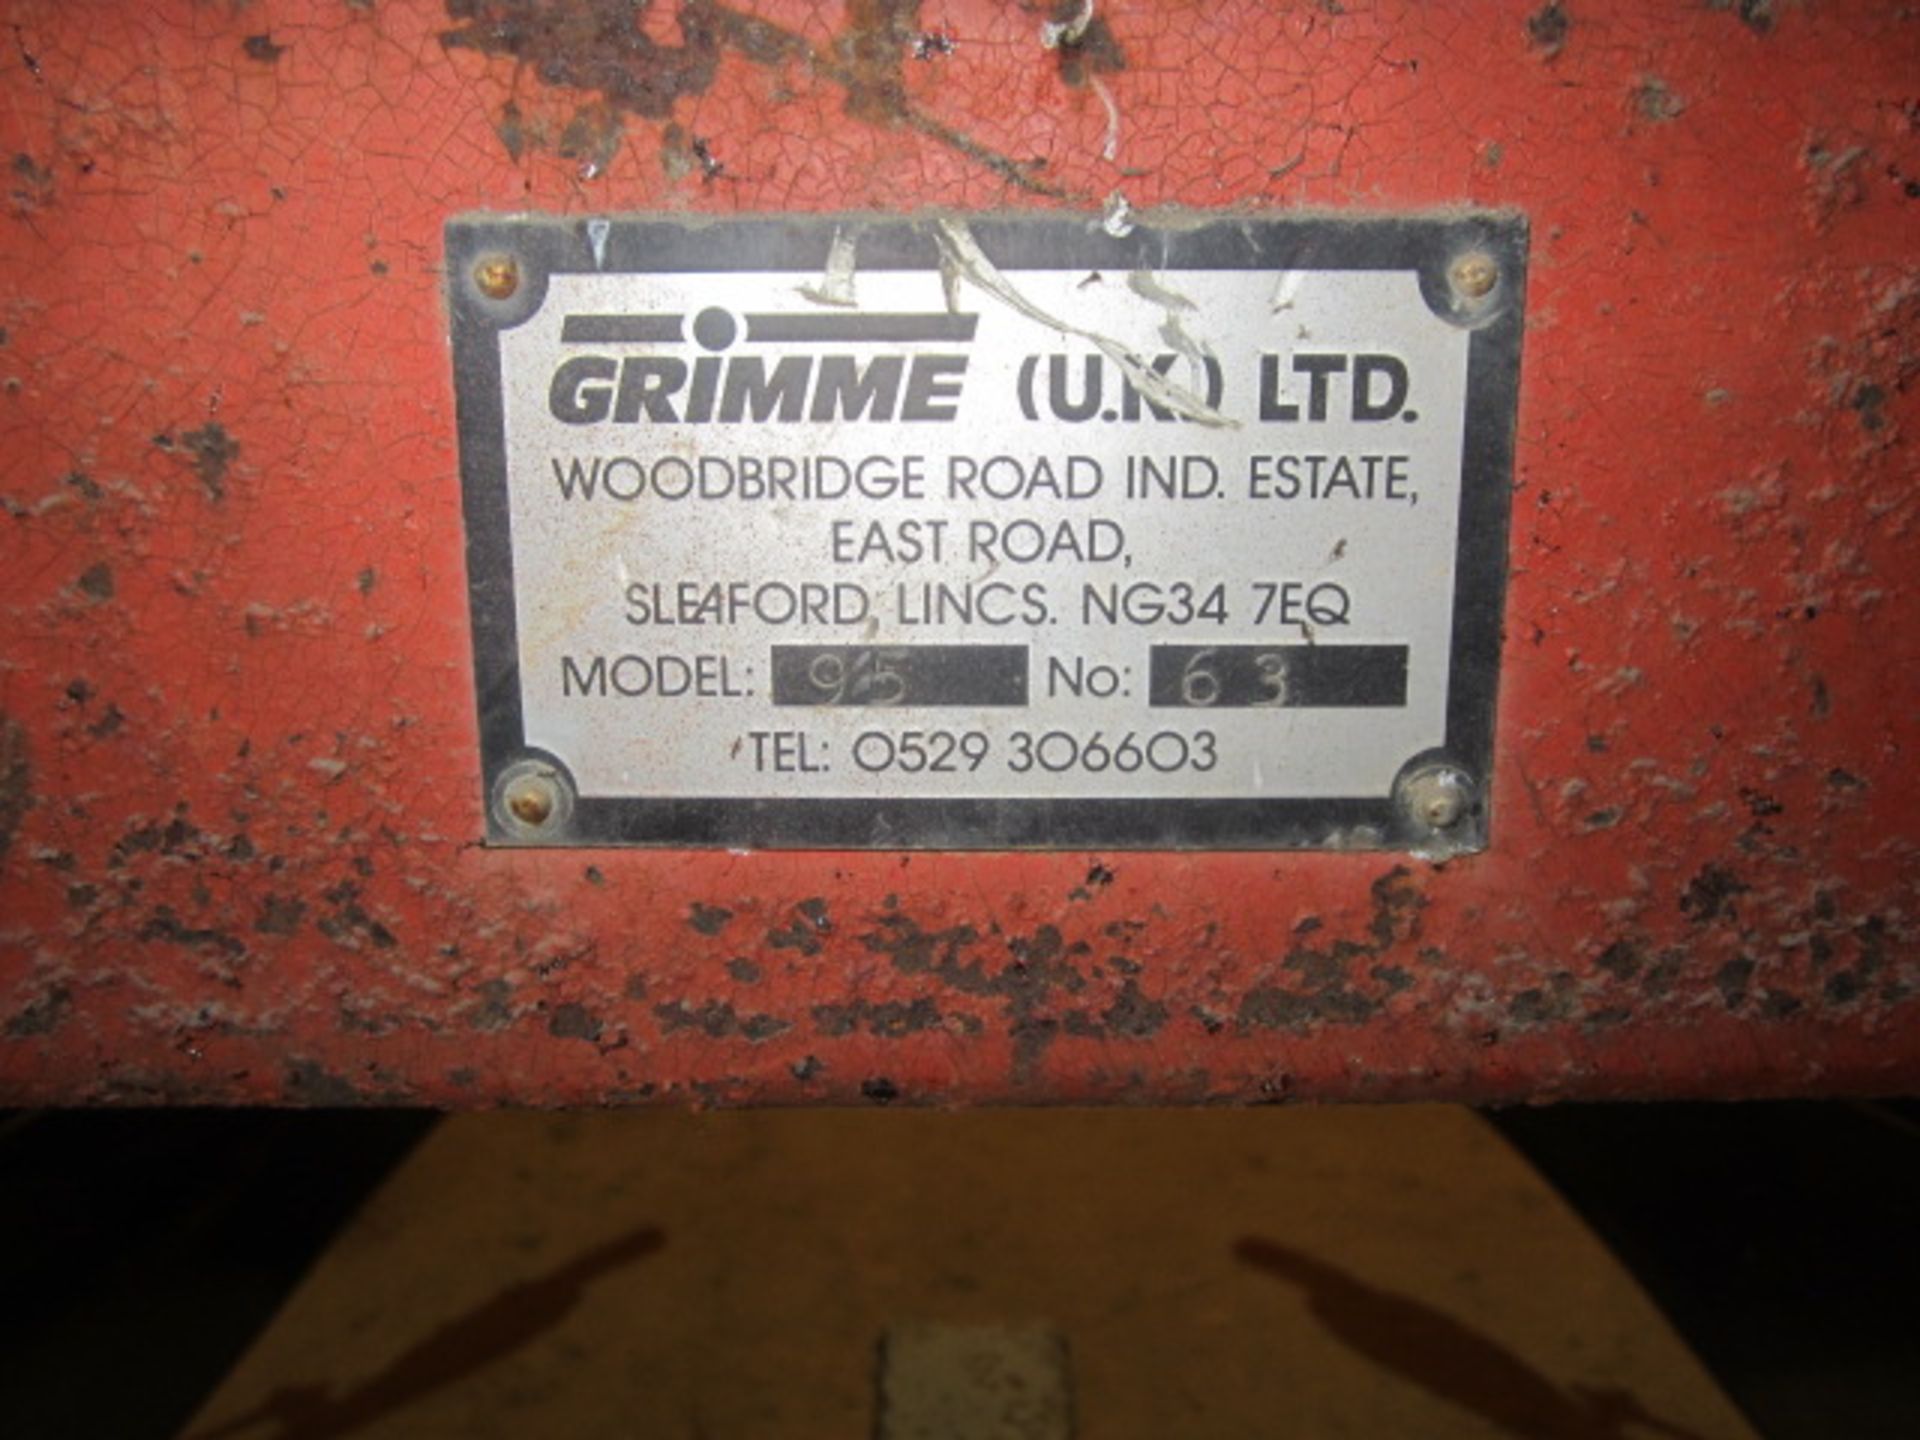 Grimme model 95 bed former, s/n: 63 - Image 7 of 7